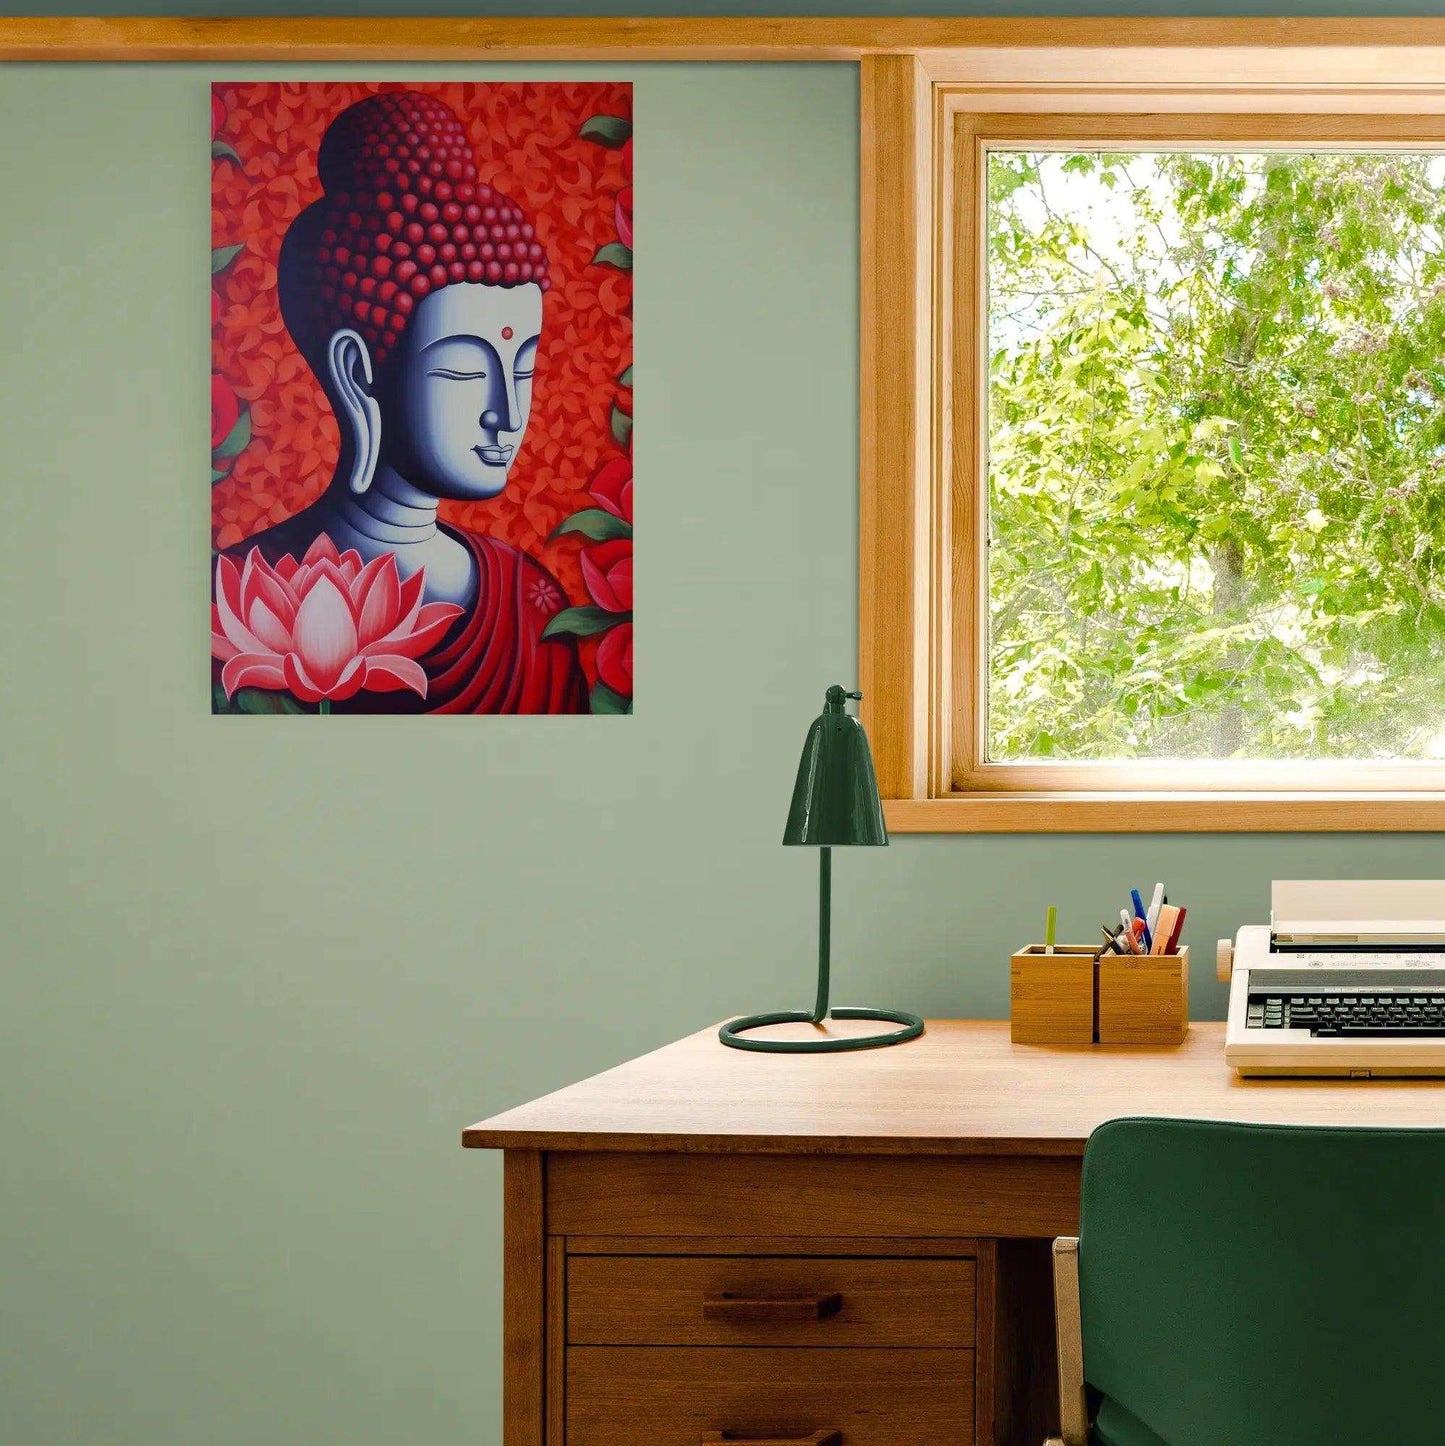 Meditative Bliss - Red Zen Buddha Poster - Zenartbliss- A Brand of Oxygen O2 Technology